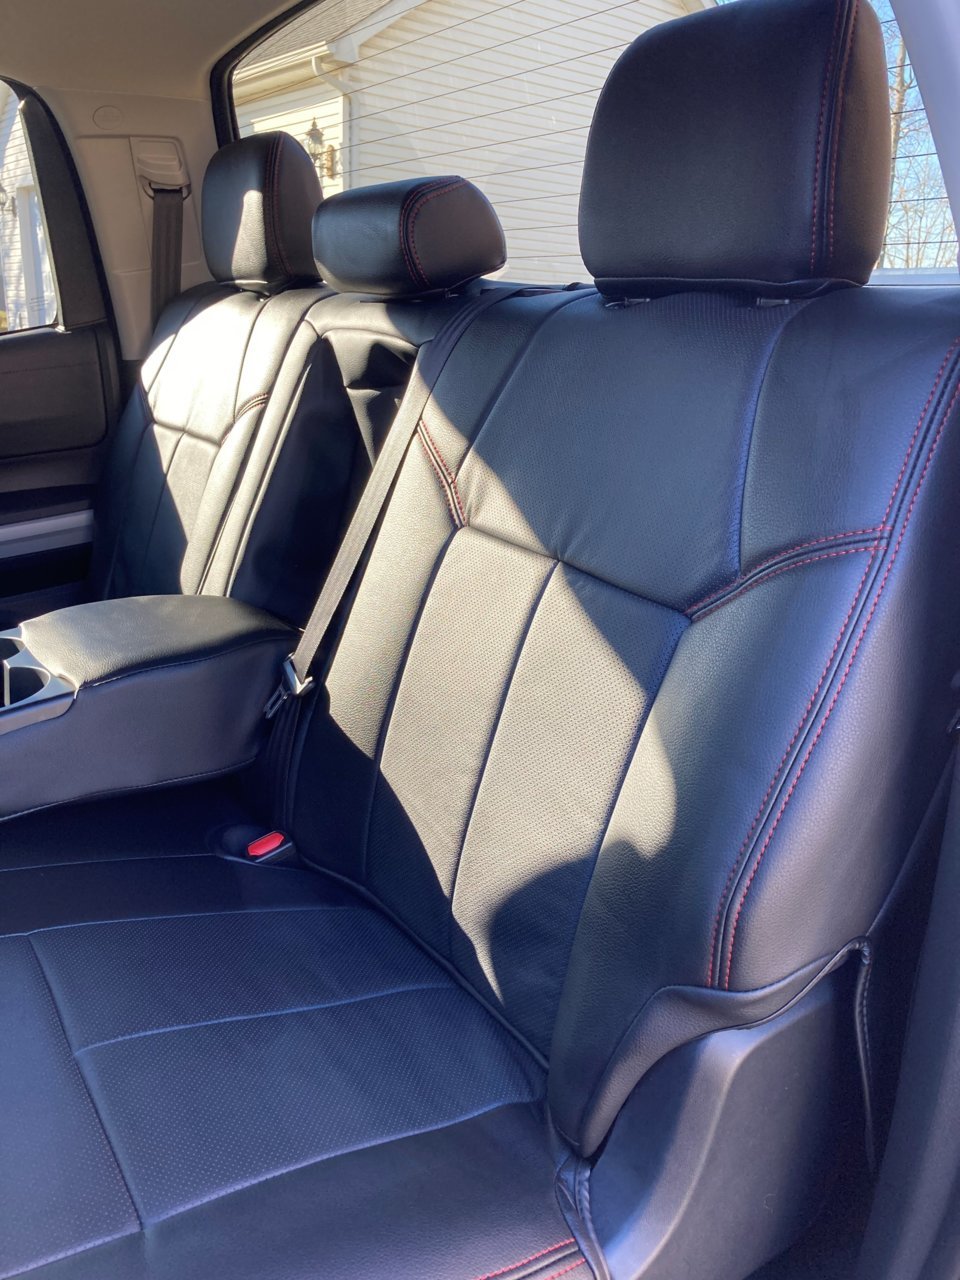 leather seats rear.jpg